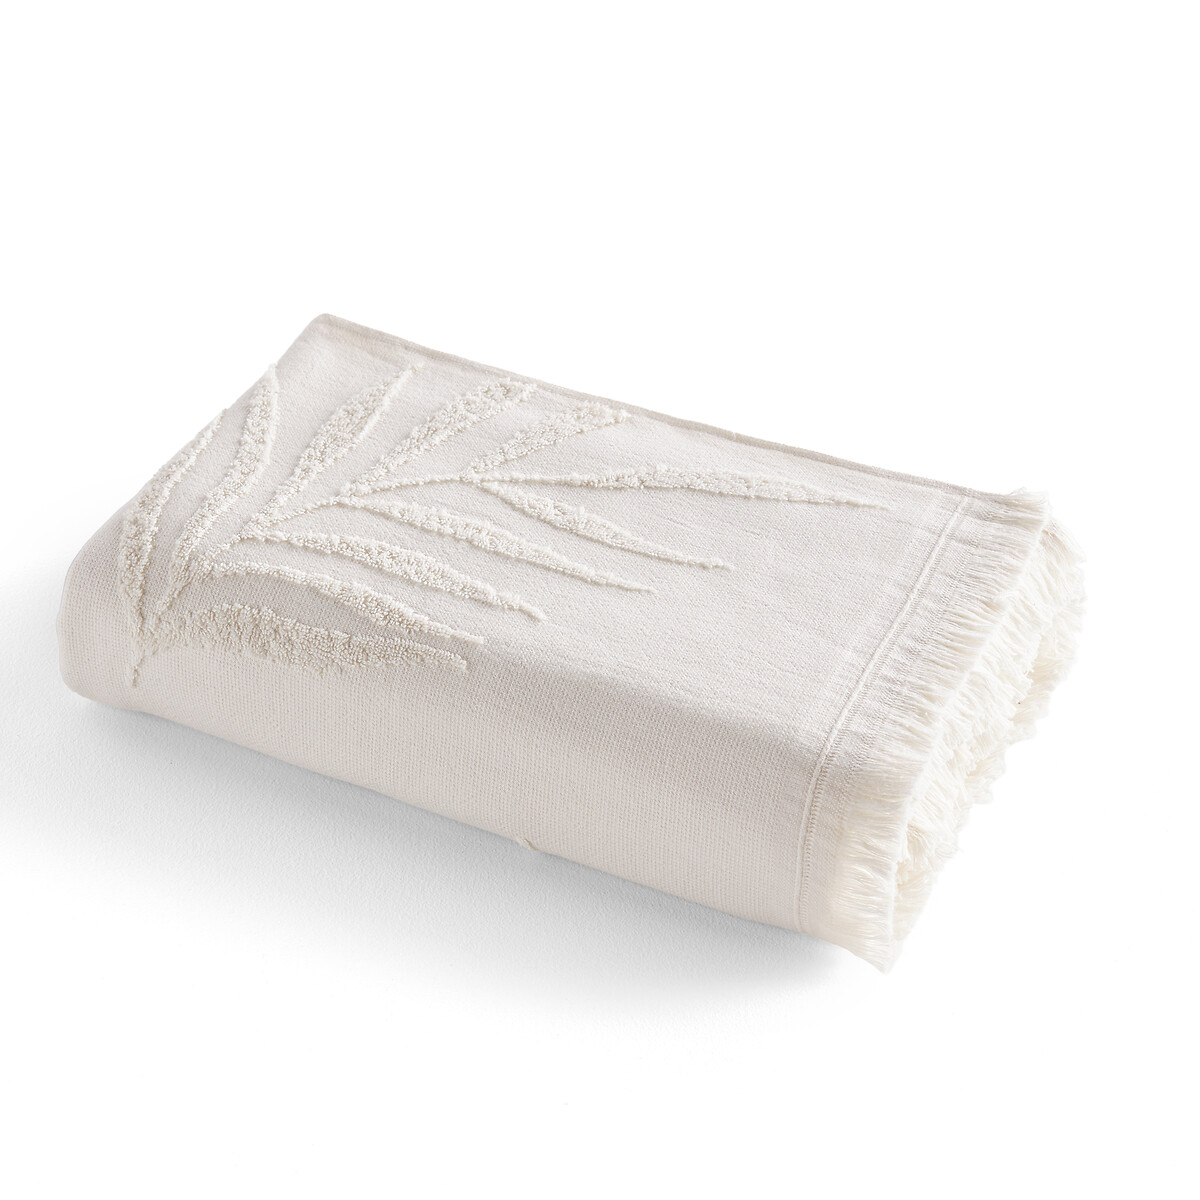 Полотенце банное из махровой ткани букле 500 гм Jobe  70 x 140 см бежевый LaRedoute, размер 70 x 140 см - фото 1